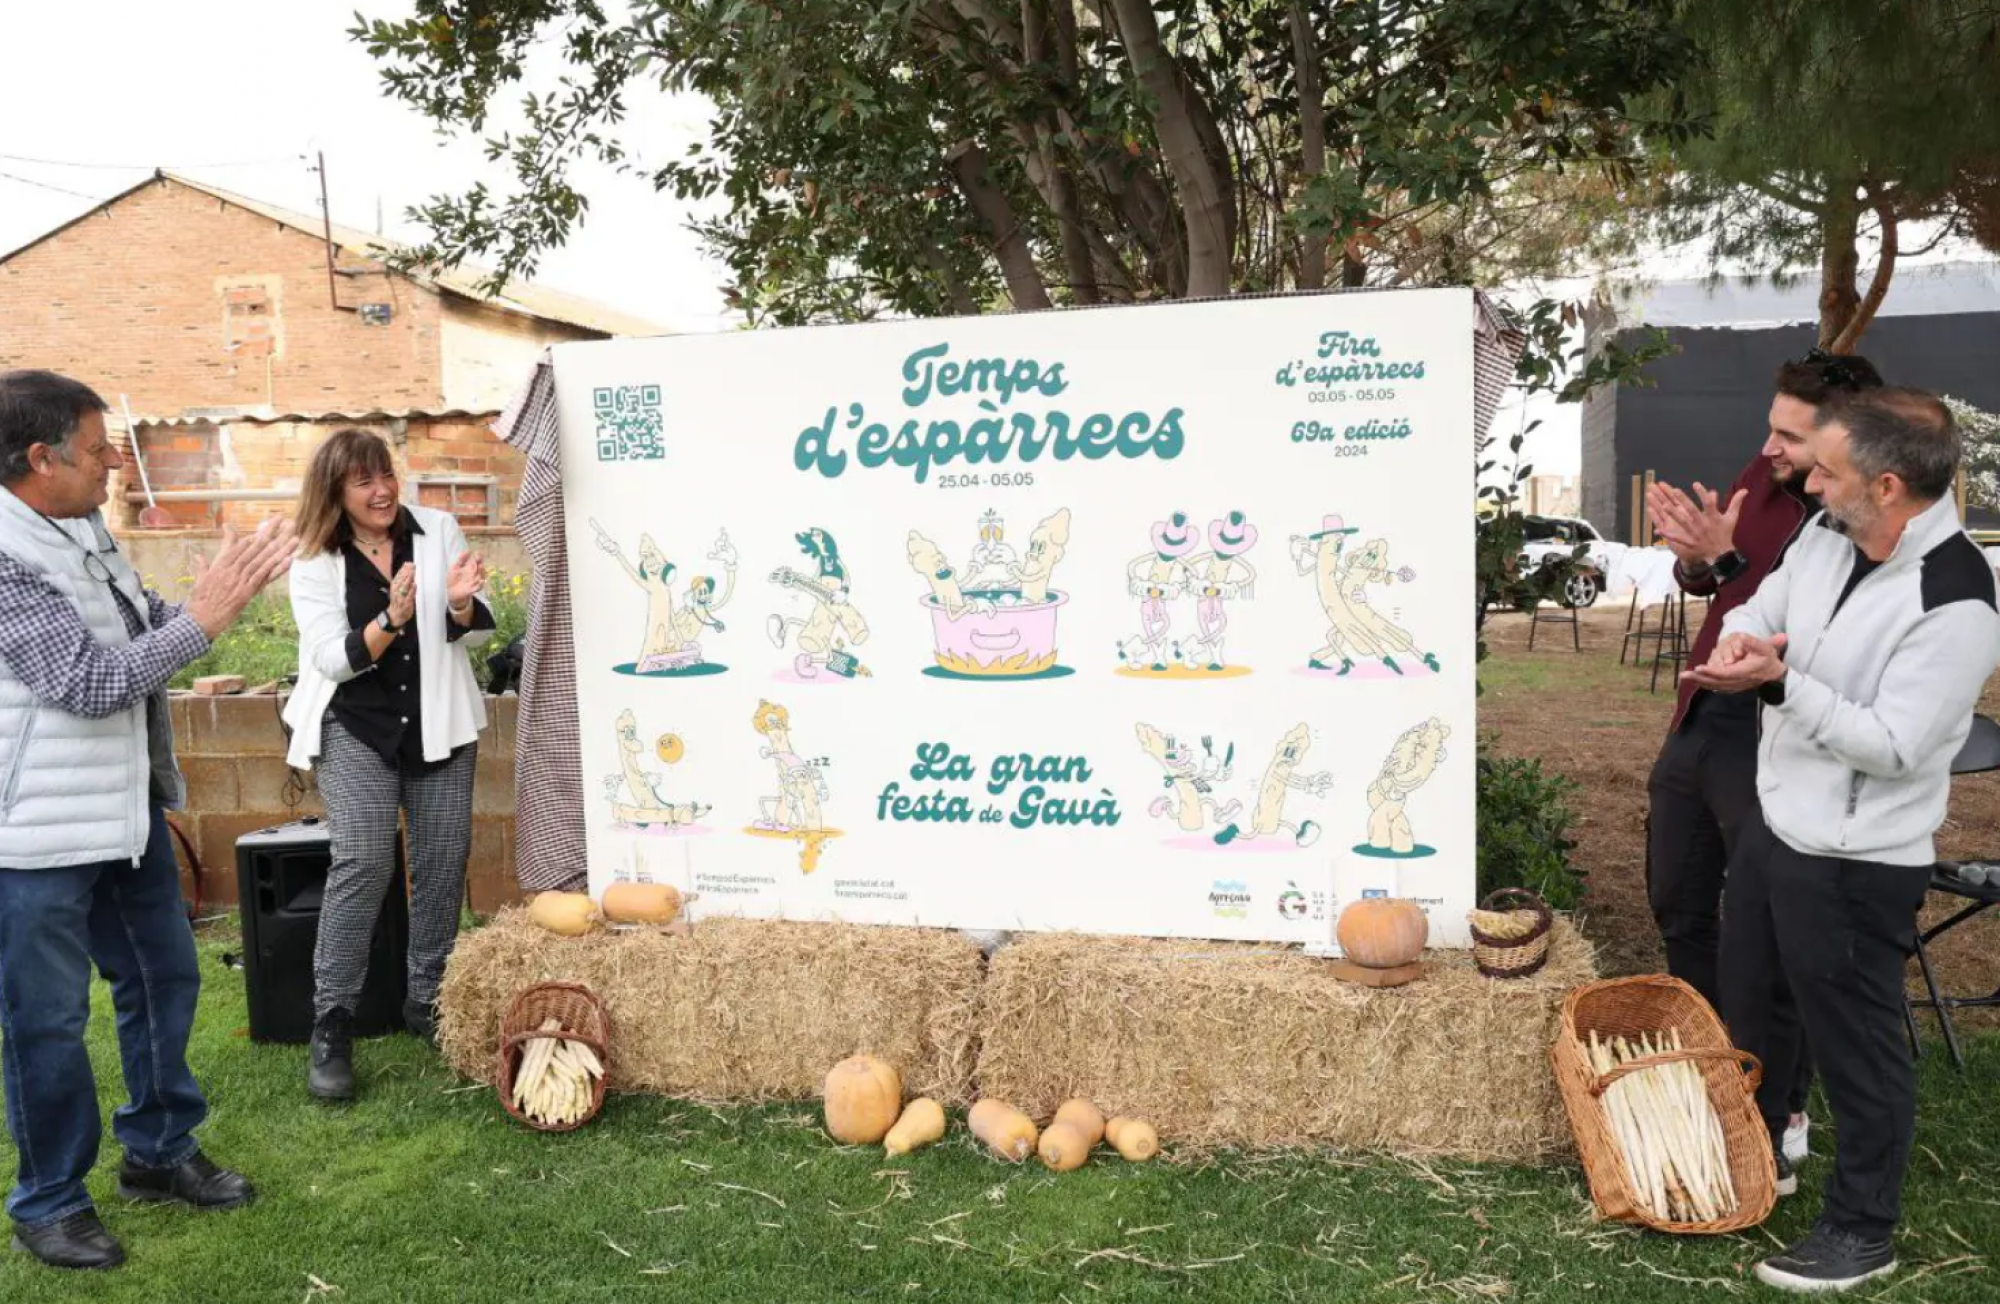 La Fira d'Espàrrecs de Gavà bate récords de asistentes: éxito de la Mostra Agrícola y el GastroGavà